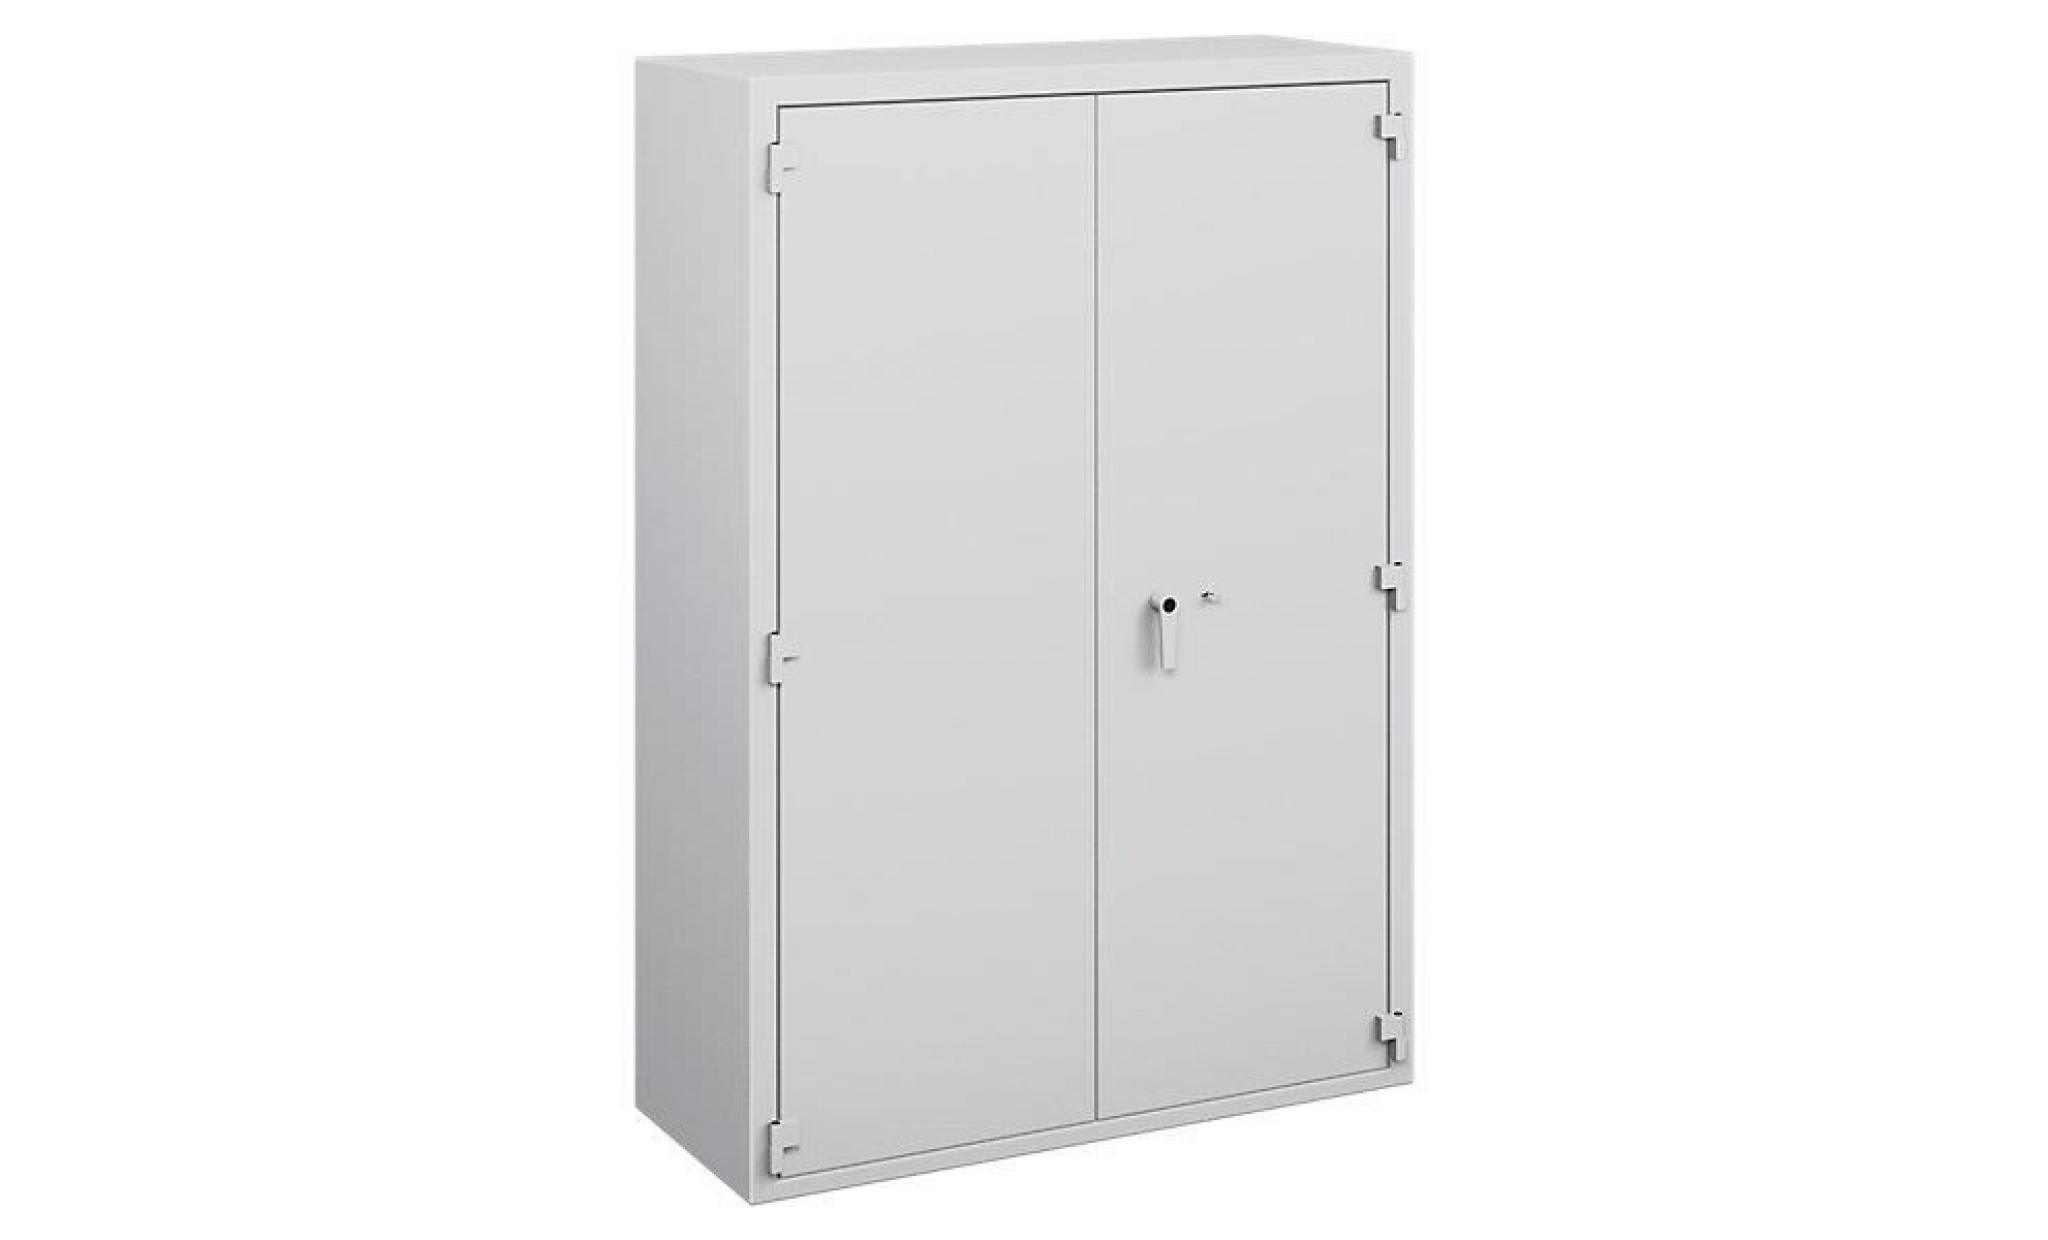 armoire de sécurité   niveau de résistance i selon les normes en 1143 1, lfs 30 p   h x l x p 1175 x 705 x 527 mm   armoire armoire pas cher